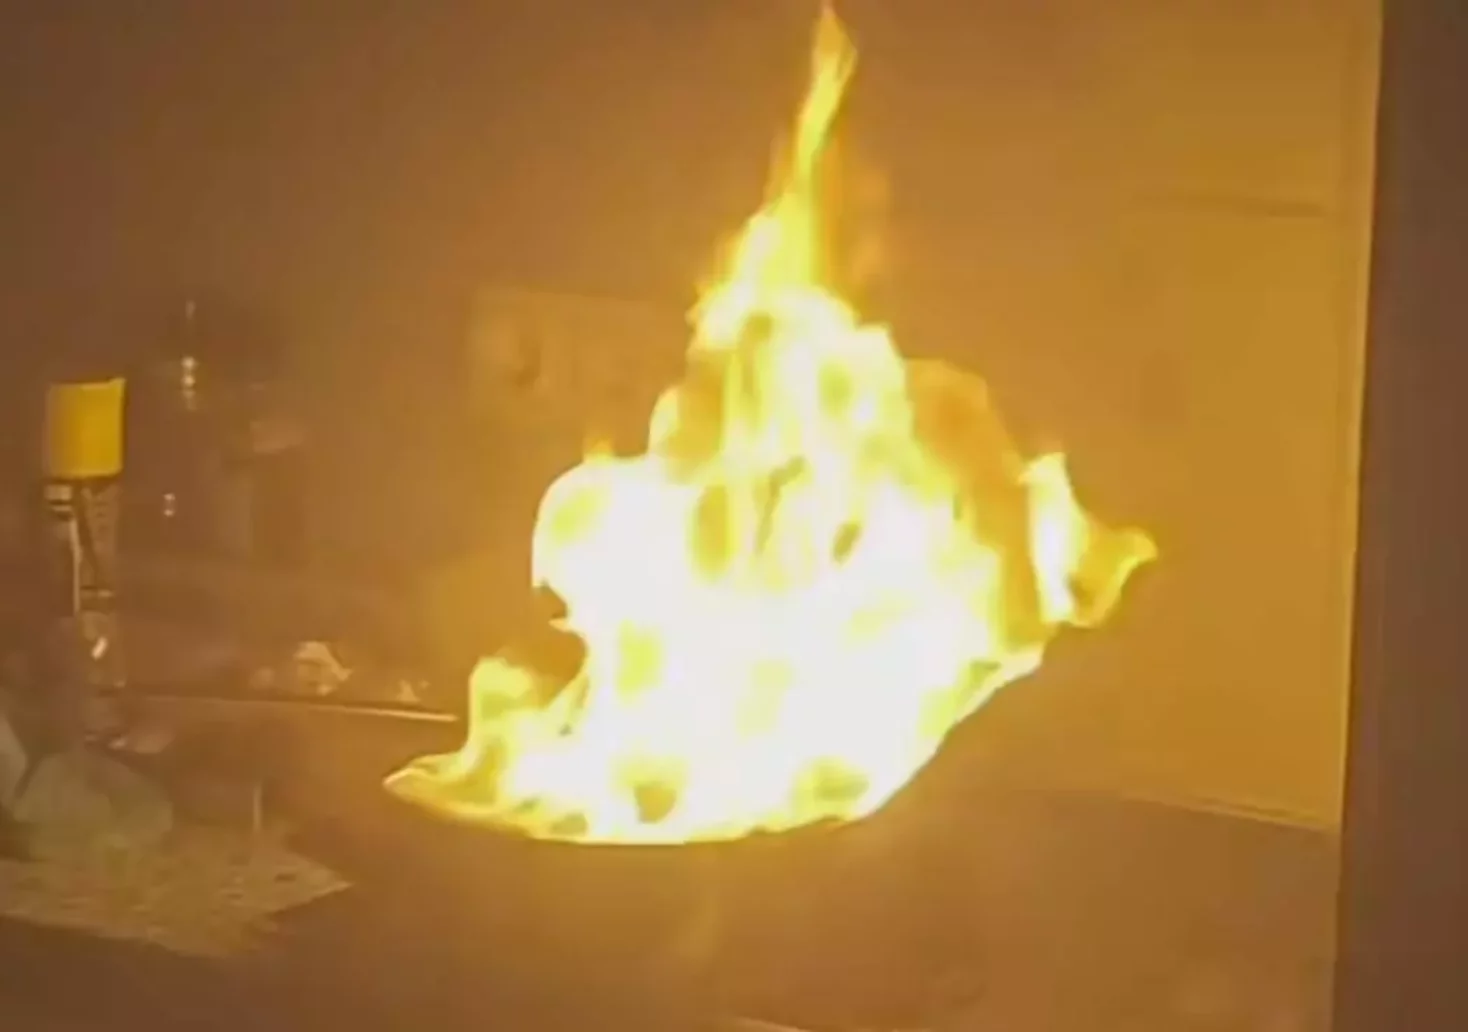 Ein Bild auf 5min.at zeigt einen brennenden Kochtopf.